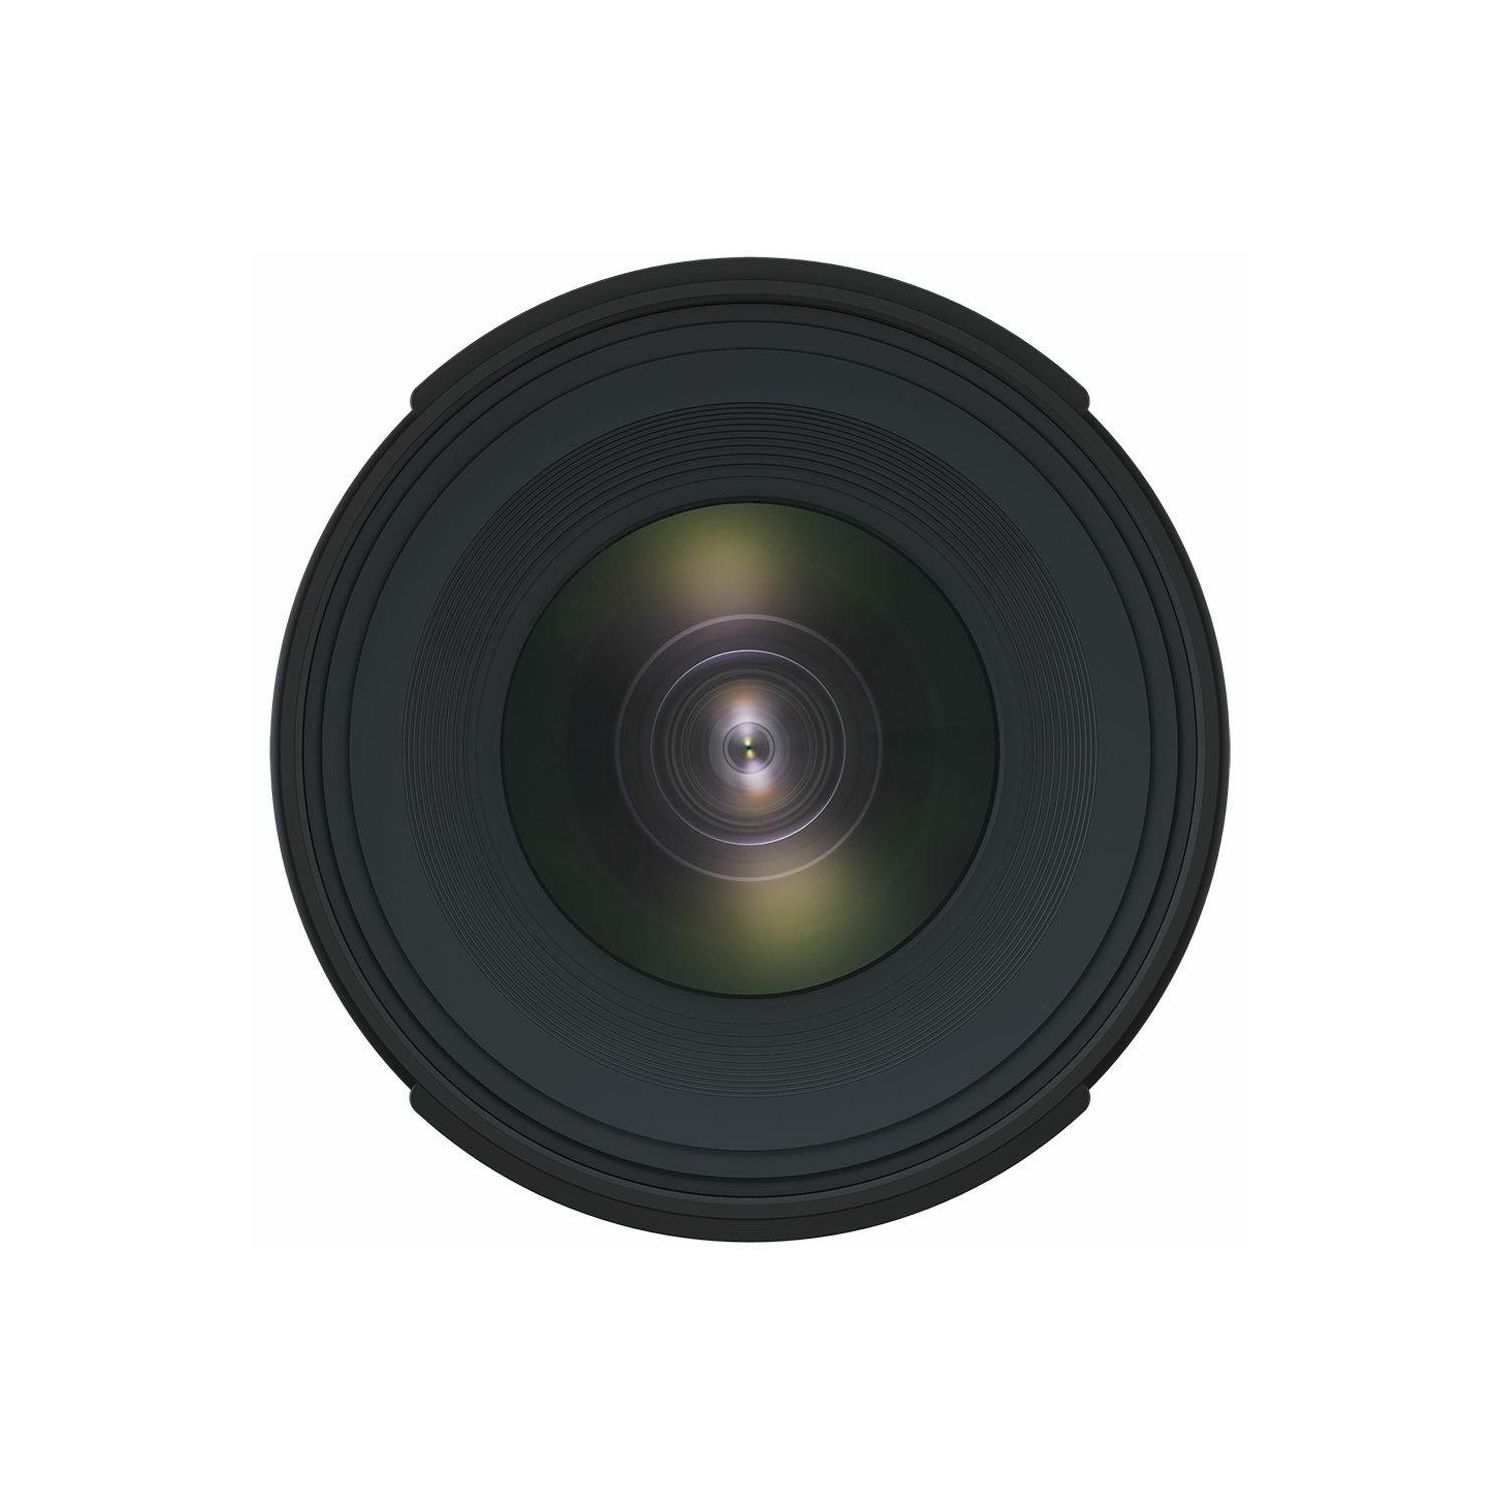 Tamron 10-24mm f/3.5-4.5 Di II VC HLD Ultra širokokutni objektiv za Nikon DX (B023N)